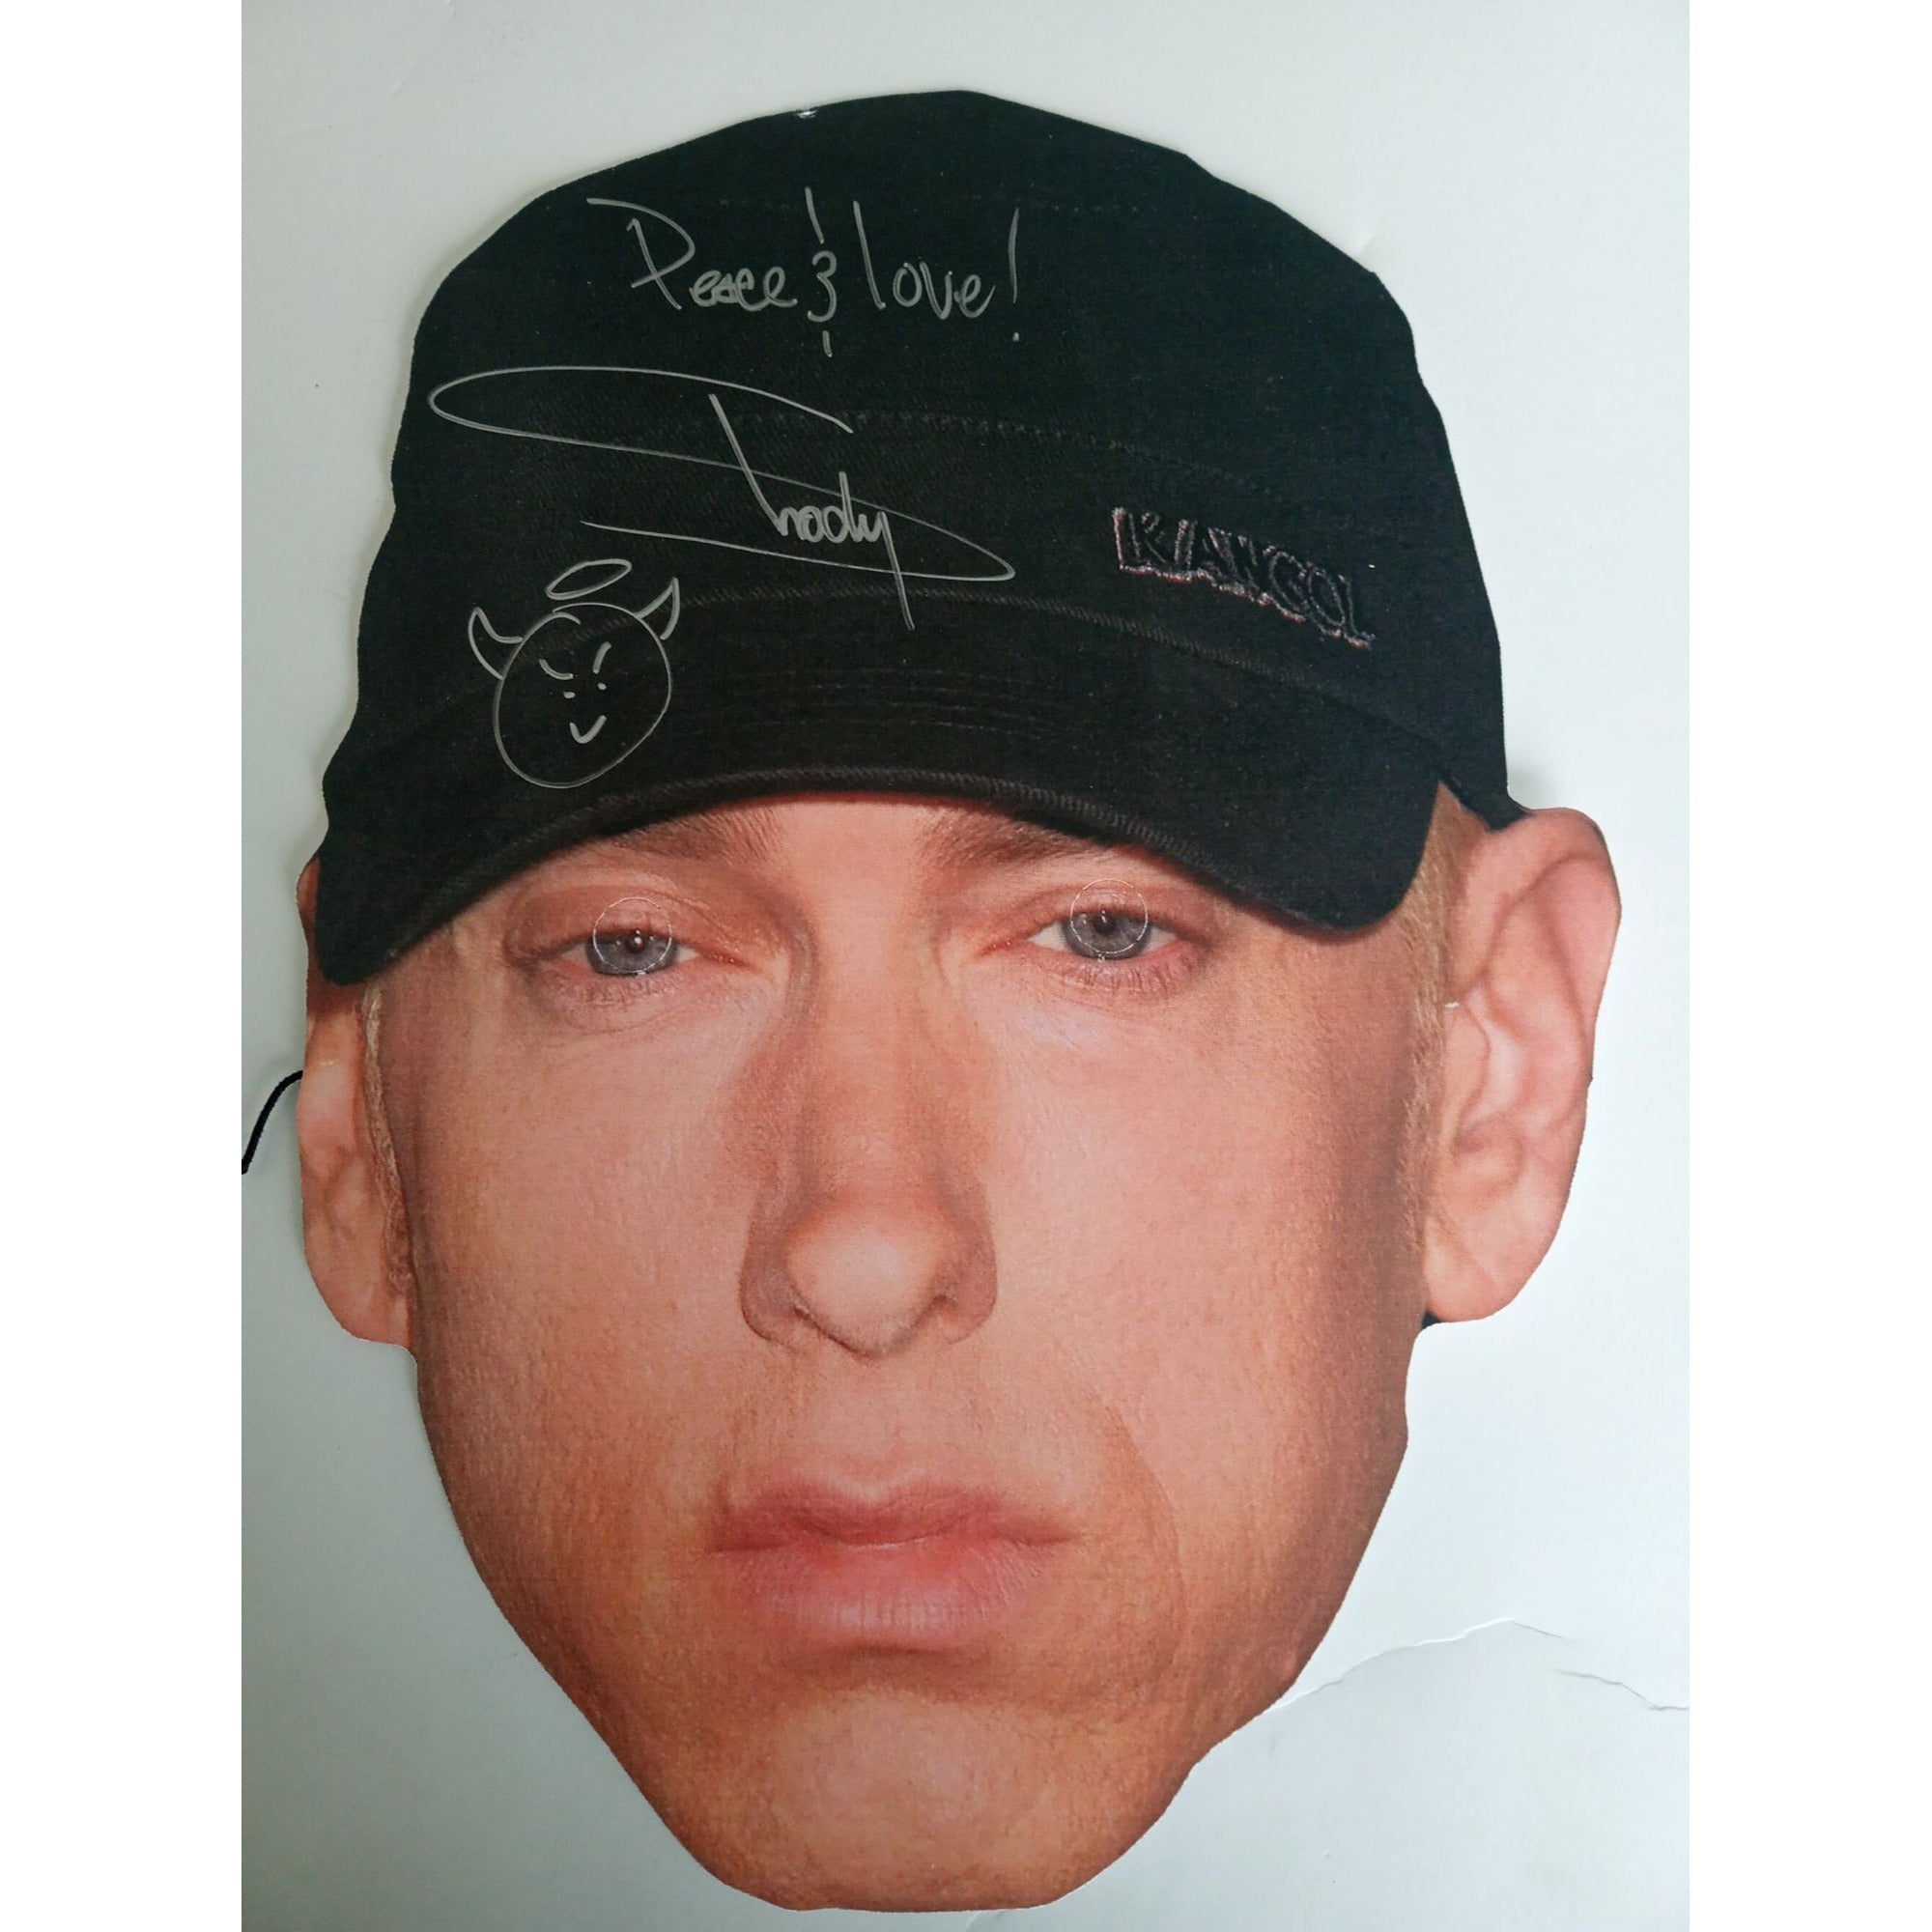 Marshall Mathers, Eminem, Slim Shady full size mask signed with proof